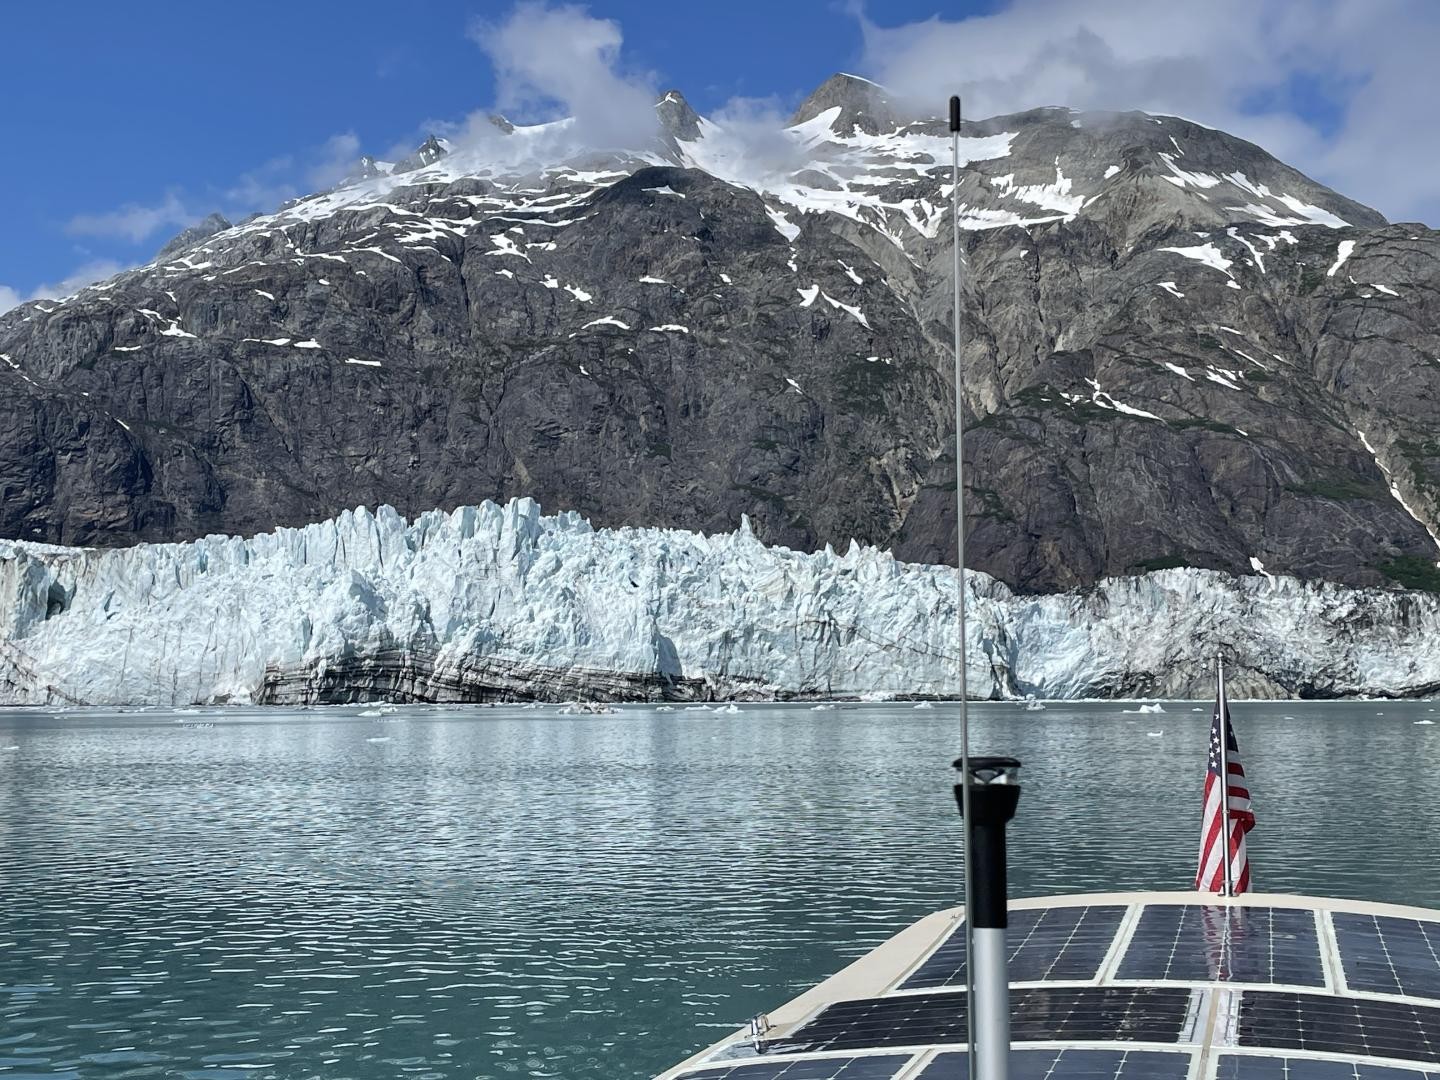 Solar boat completes emission-free voyage to Alaska